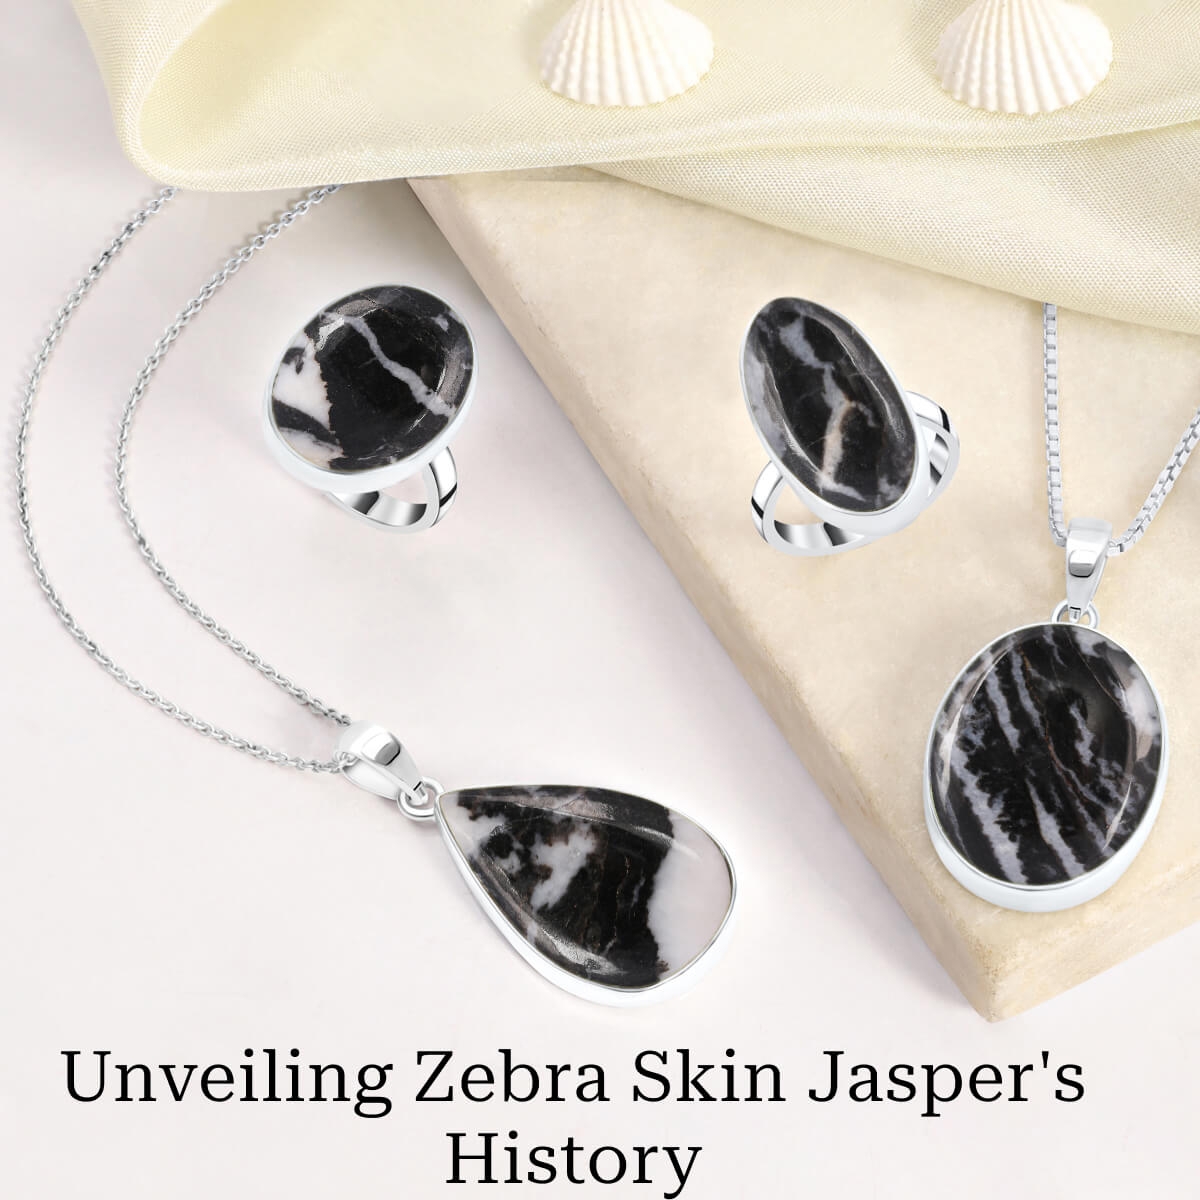 Zebra Skin Jasper Stone - Its History & Formation